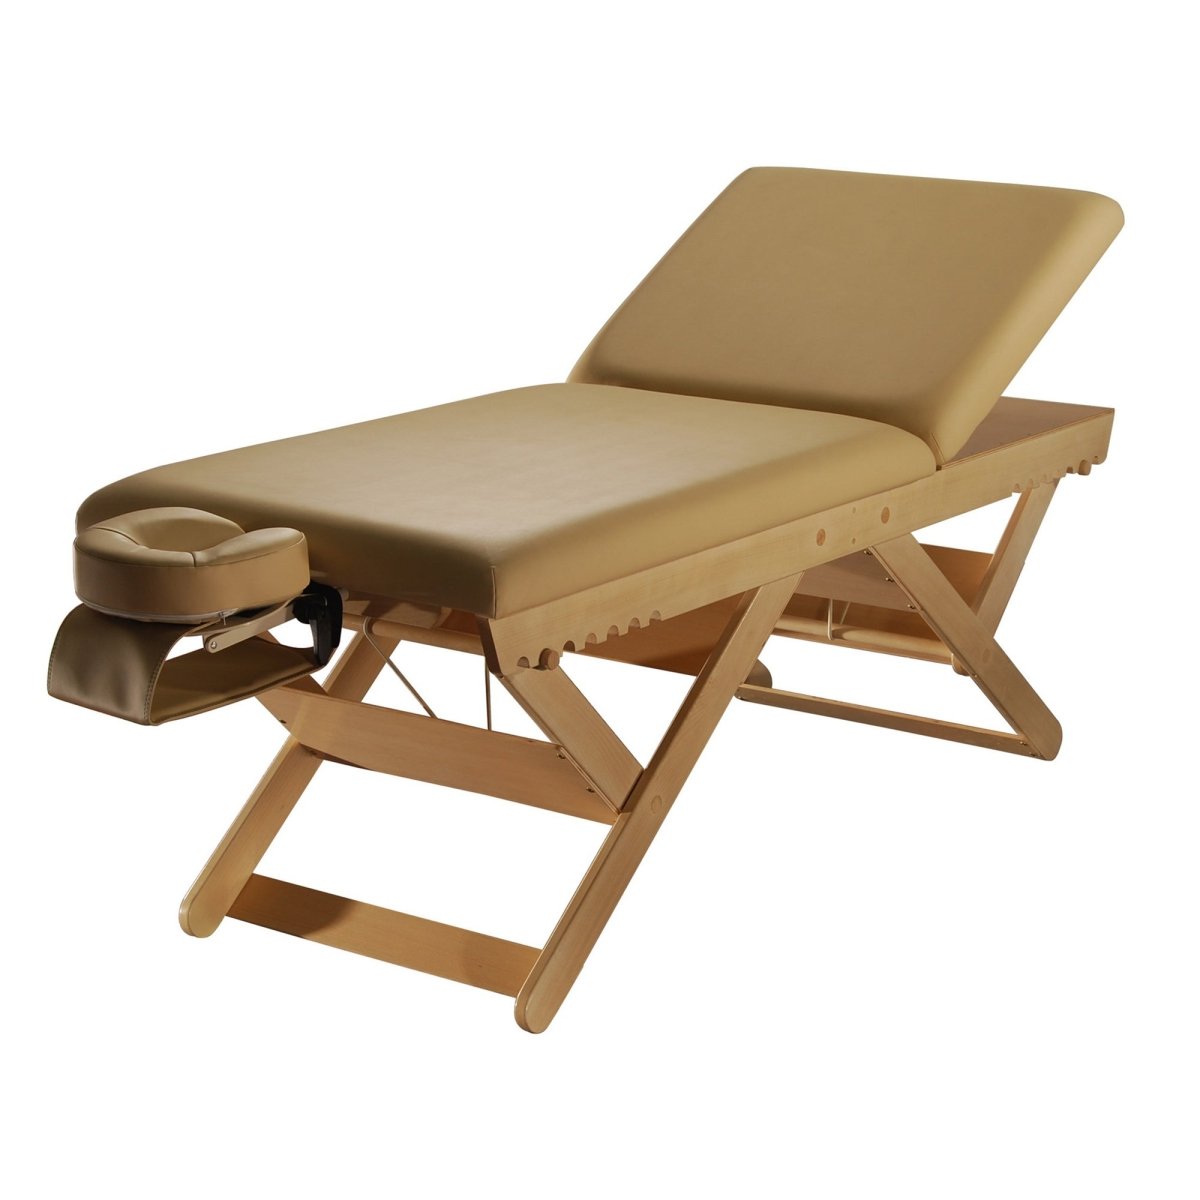 Prestige-Tilt Wooden Stationary Massage SPA Table - Greenlife Treatment-Stationary Massage Table